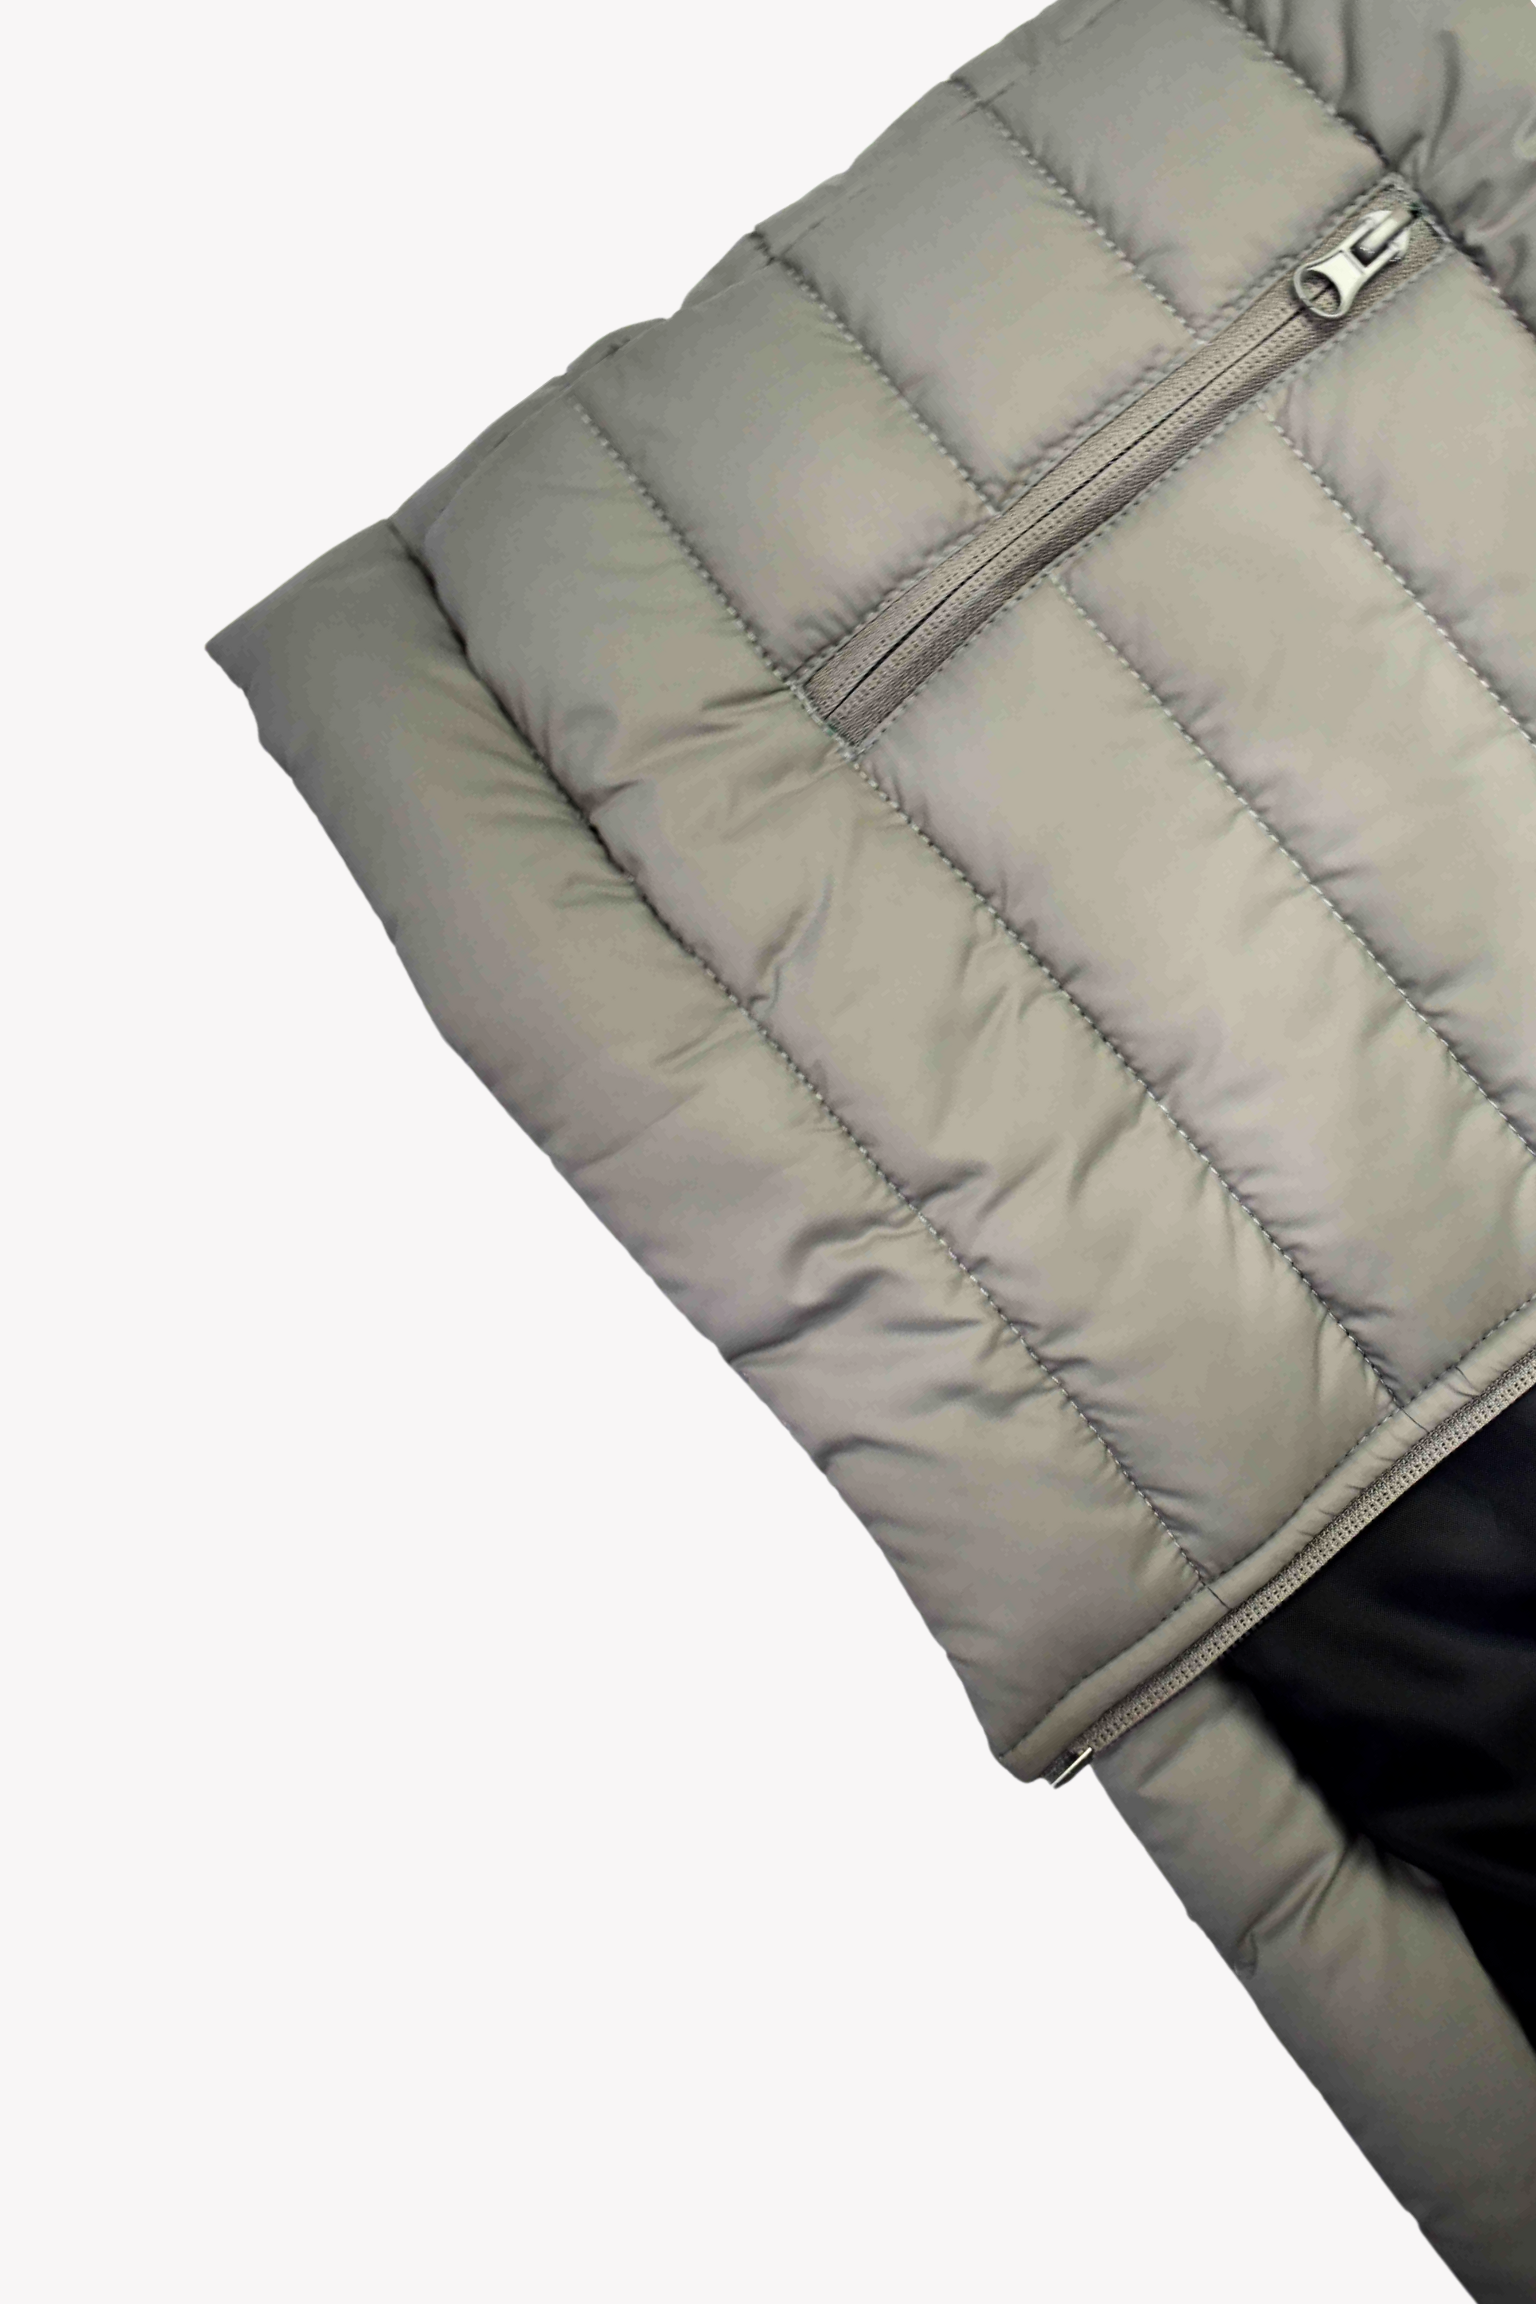 Hinz Luxury Puffer Jacket (Mat-Grey) - Hinz Knit